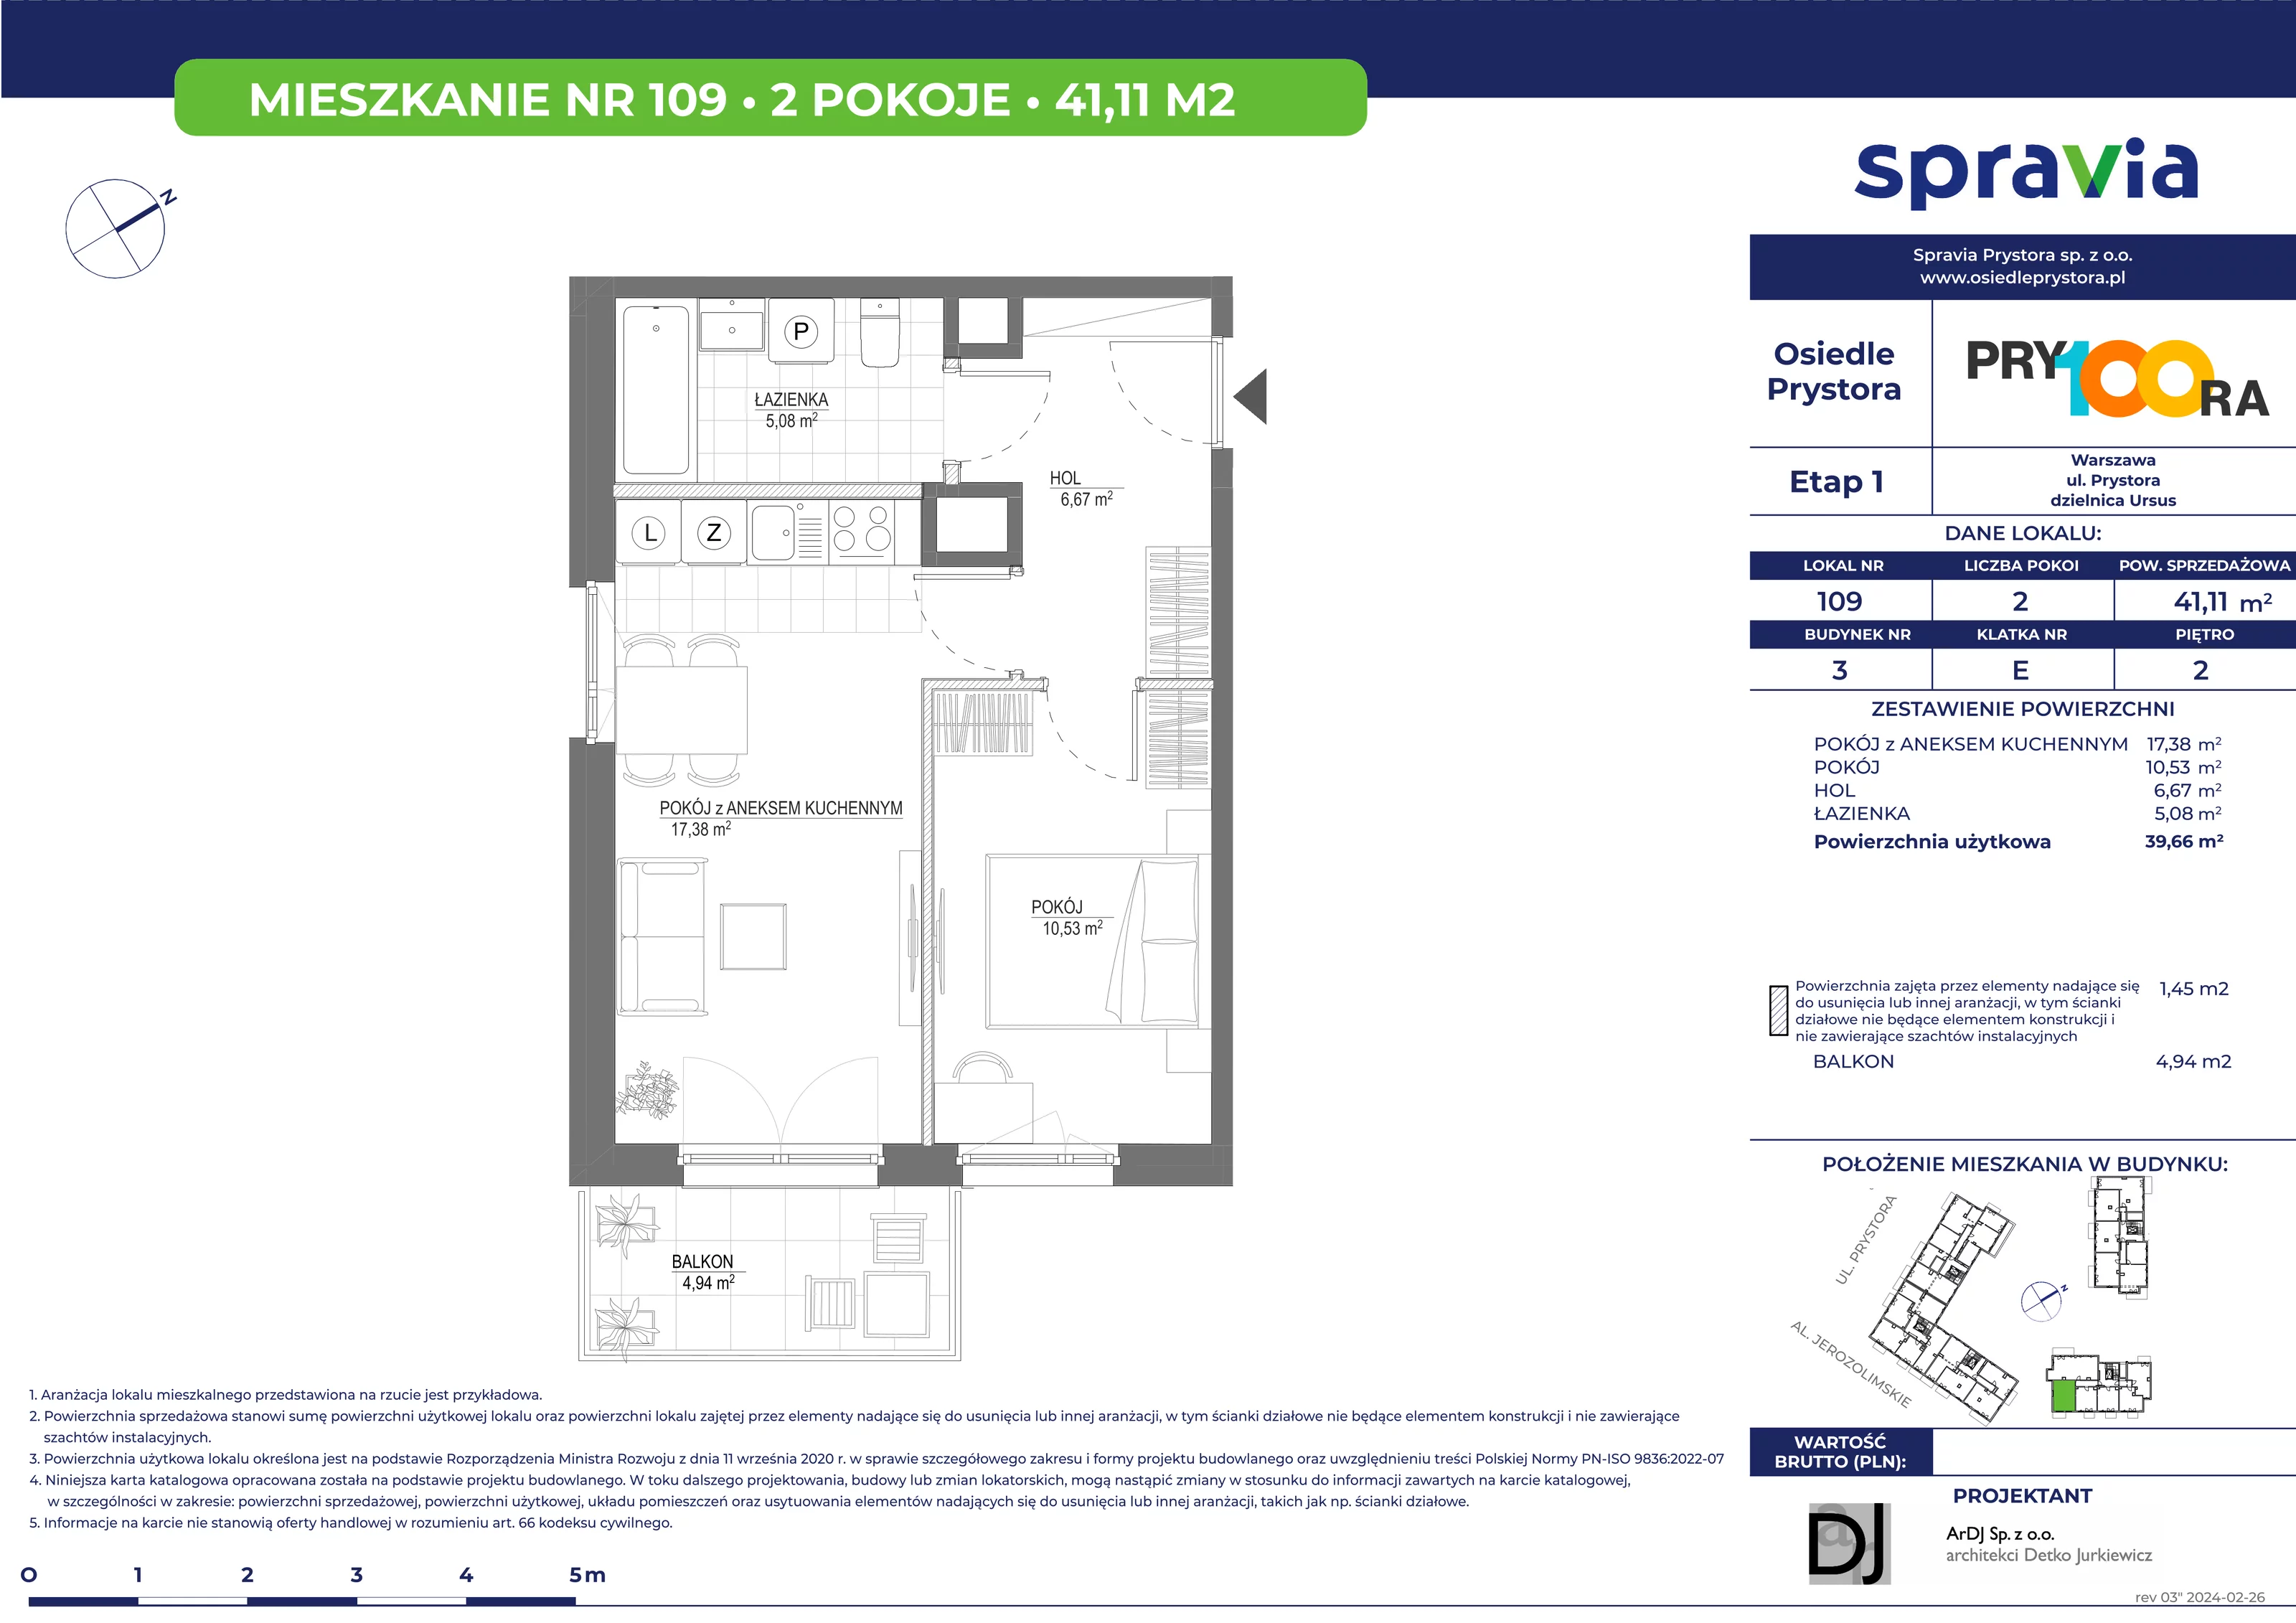 Mieszkanie 41,11 m², piętro 2, oferta nr 109, Osiedle Prystora, Warszawa, Ursus, Skorosze, ul. Prystora